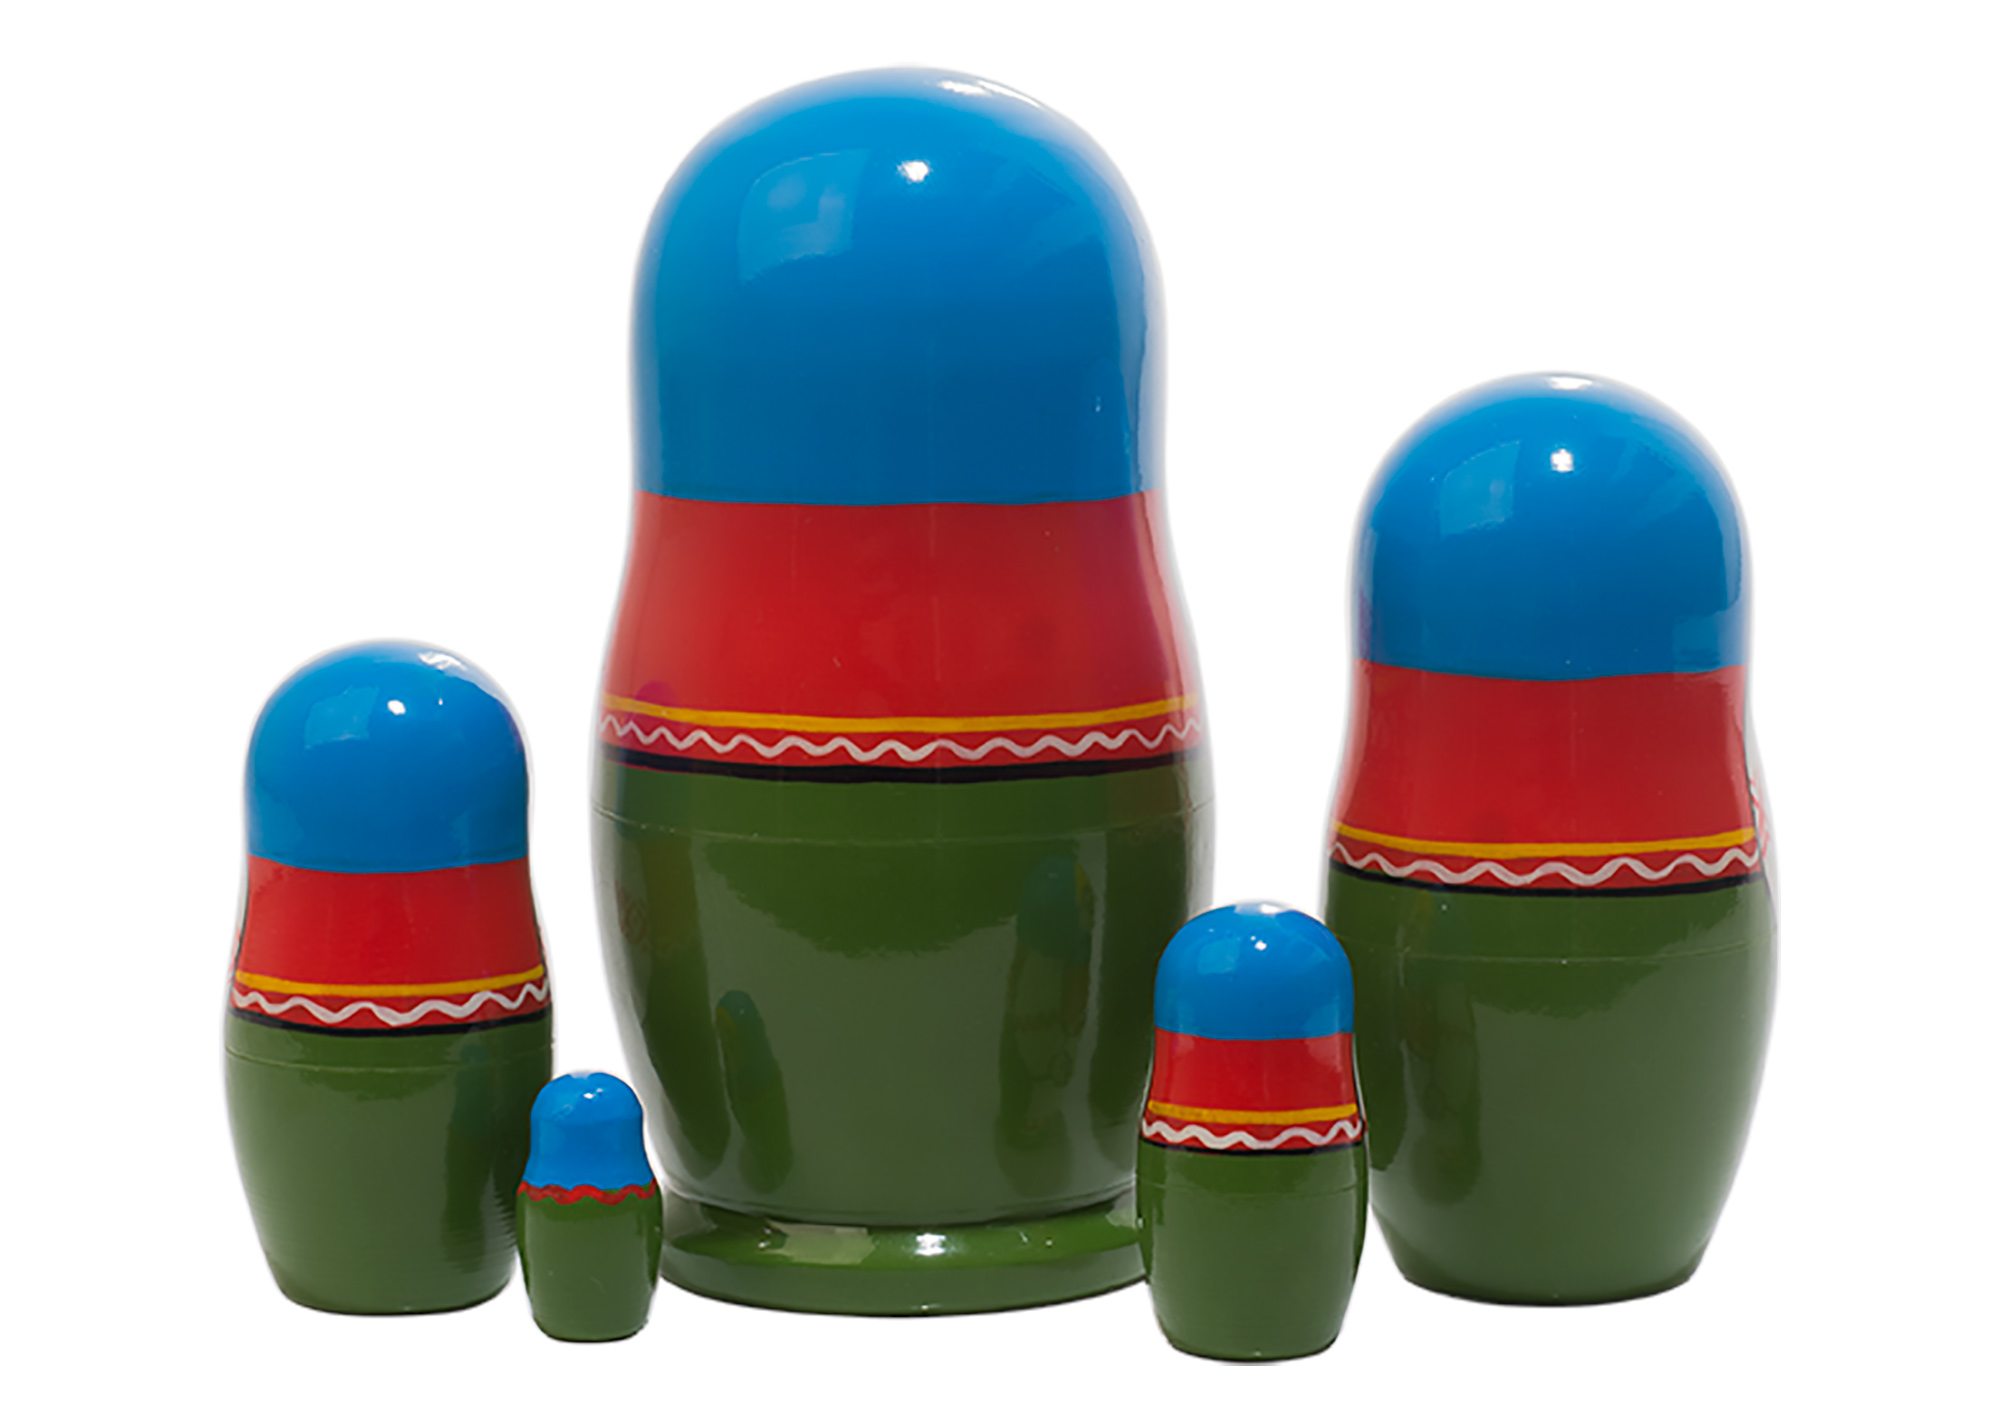 Buy Belarus Folk Nesting Doll 5pc./4.25" at GoldenCockerel.com